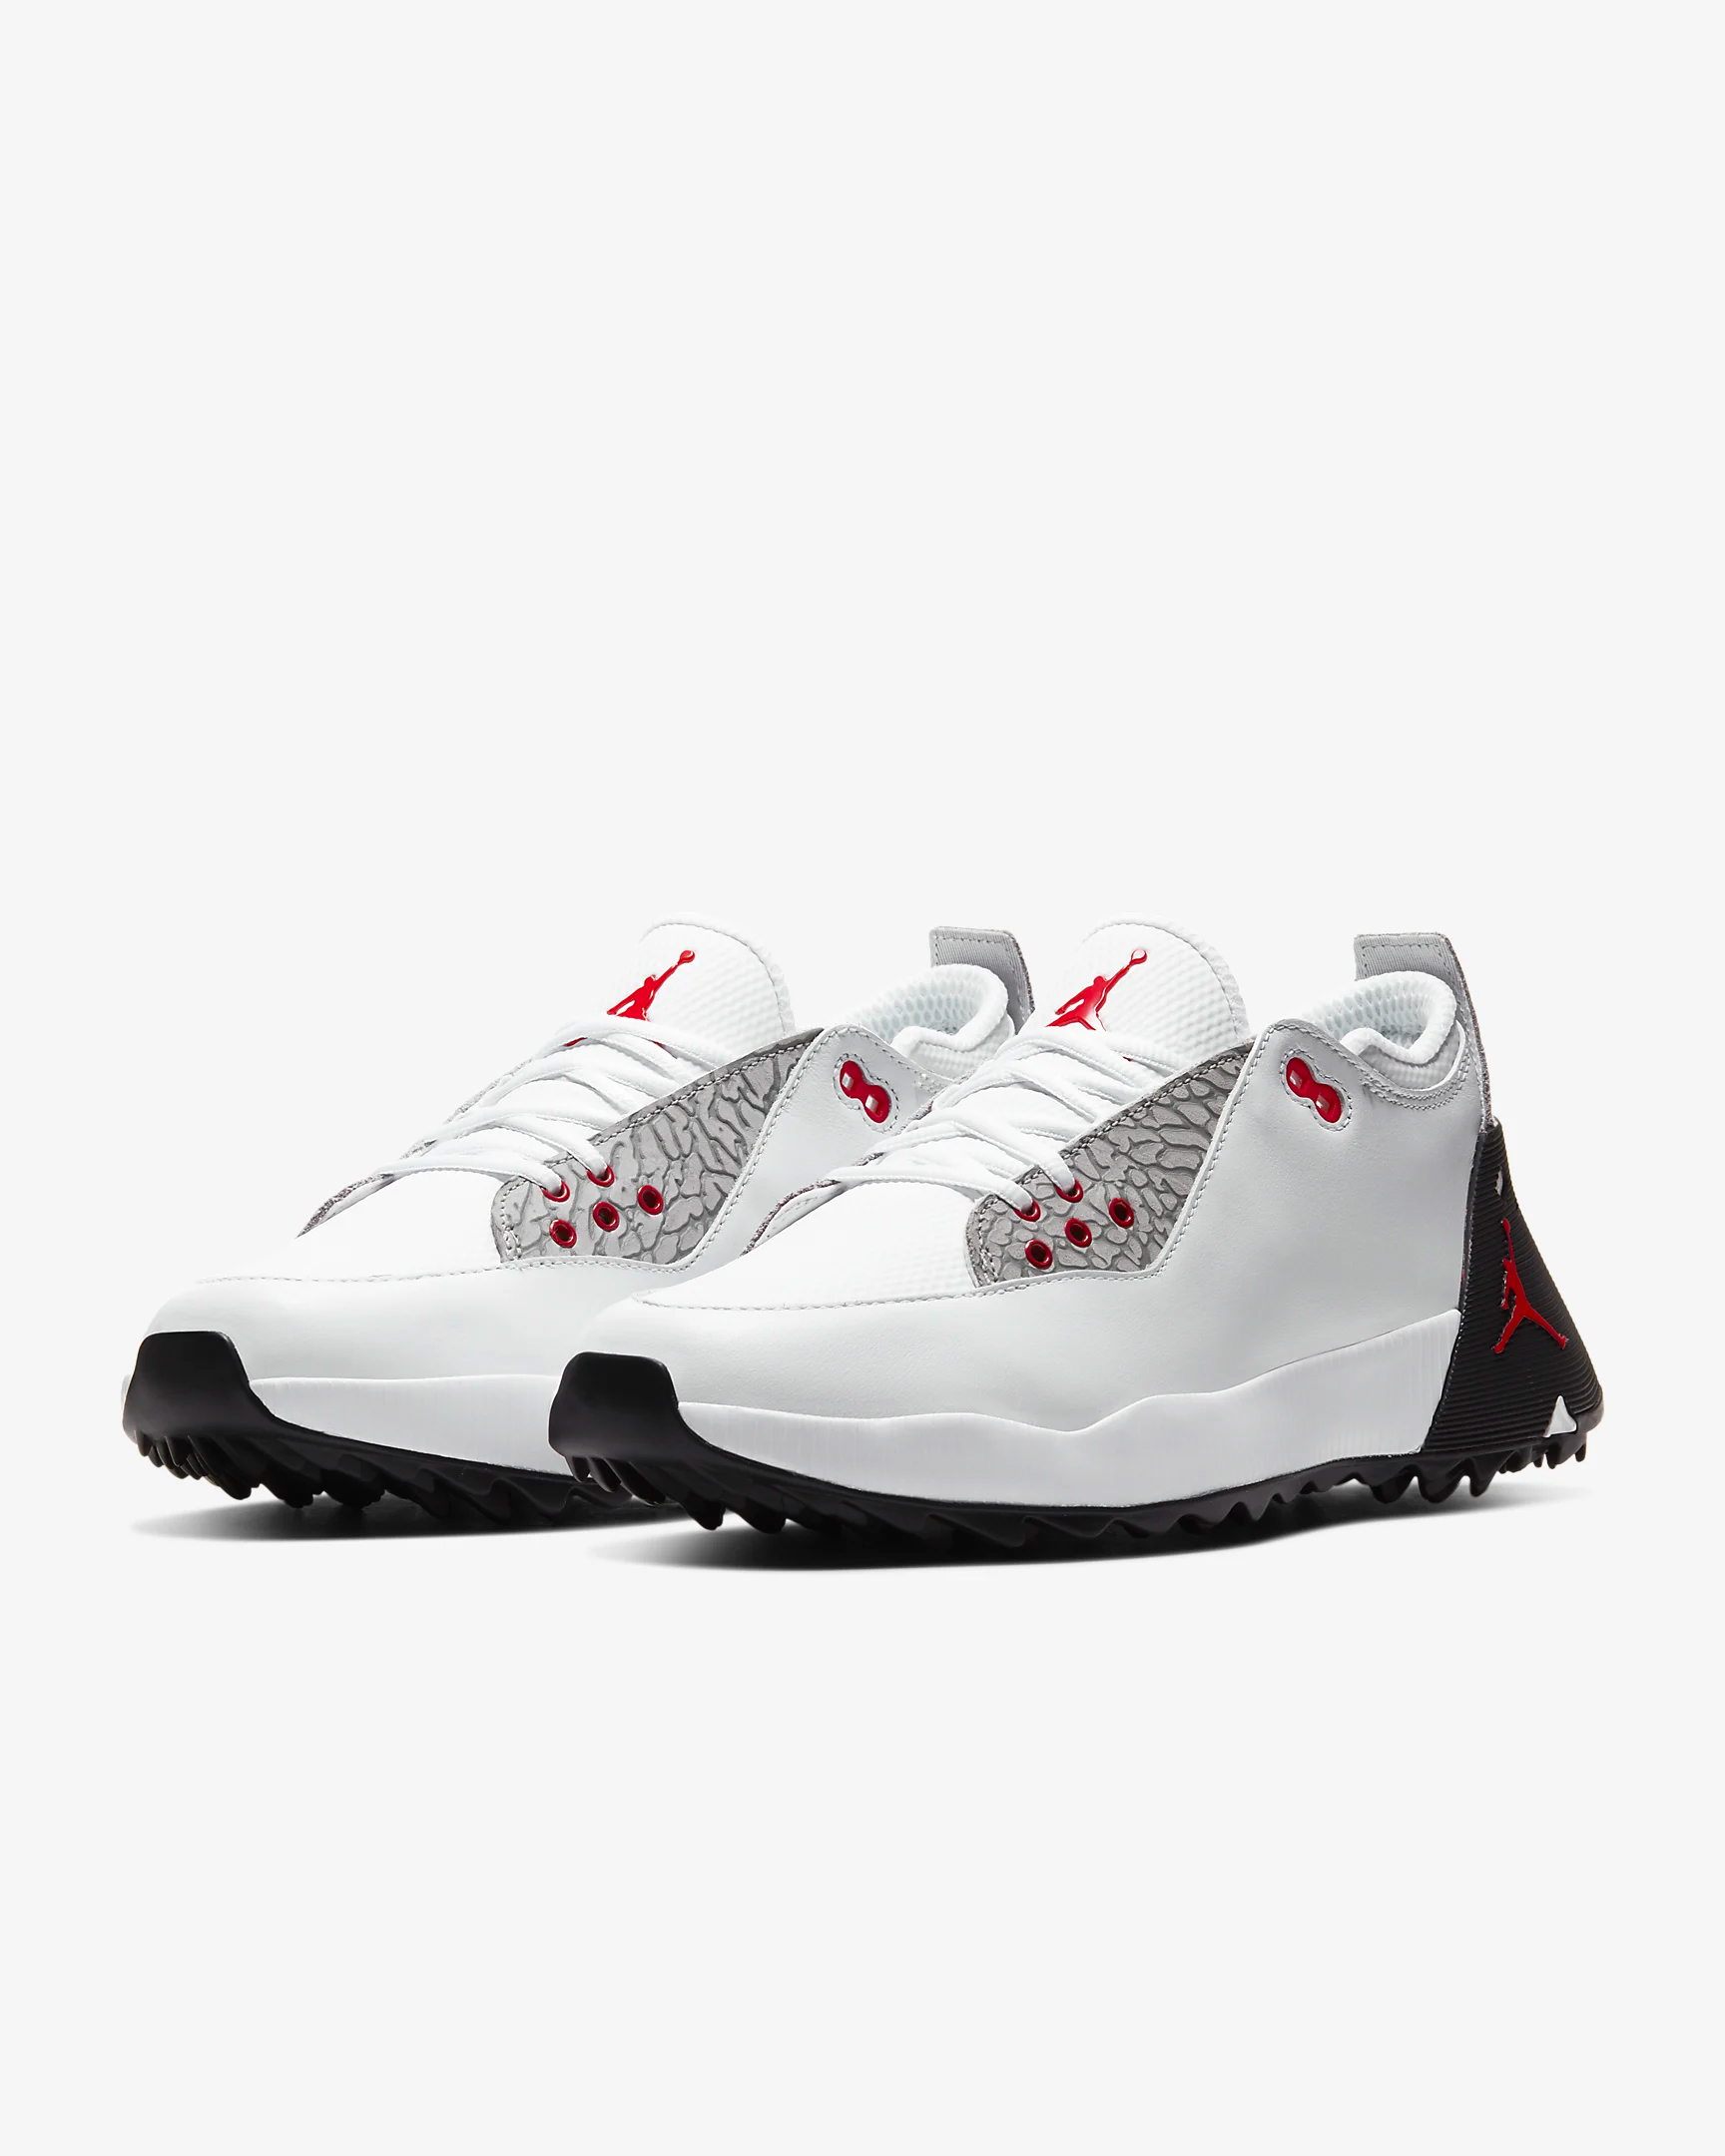 spikeless Jordan golf shoes 